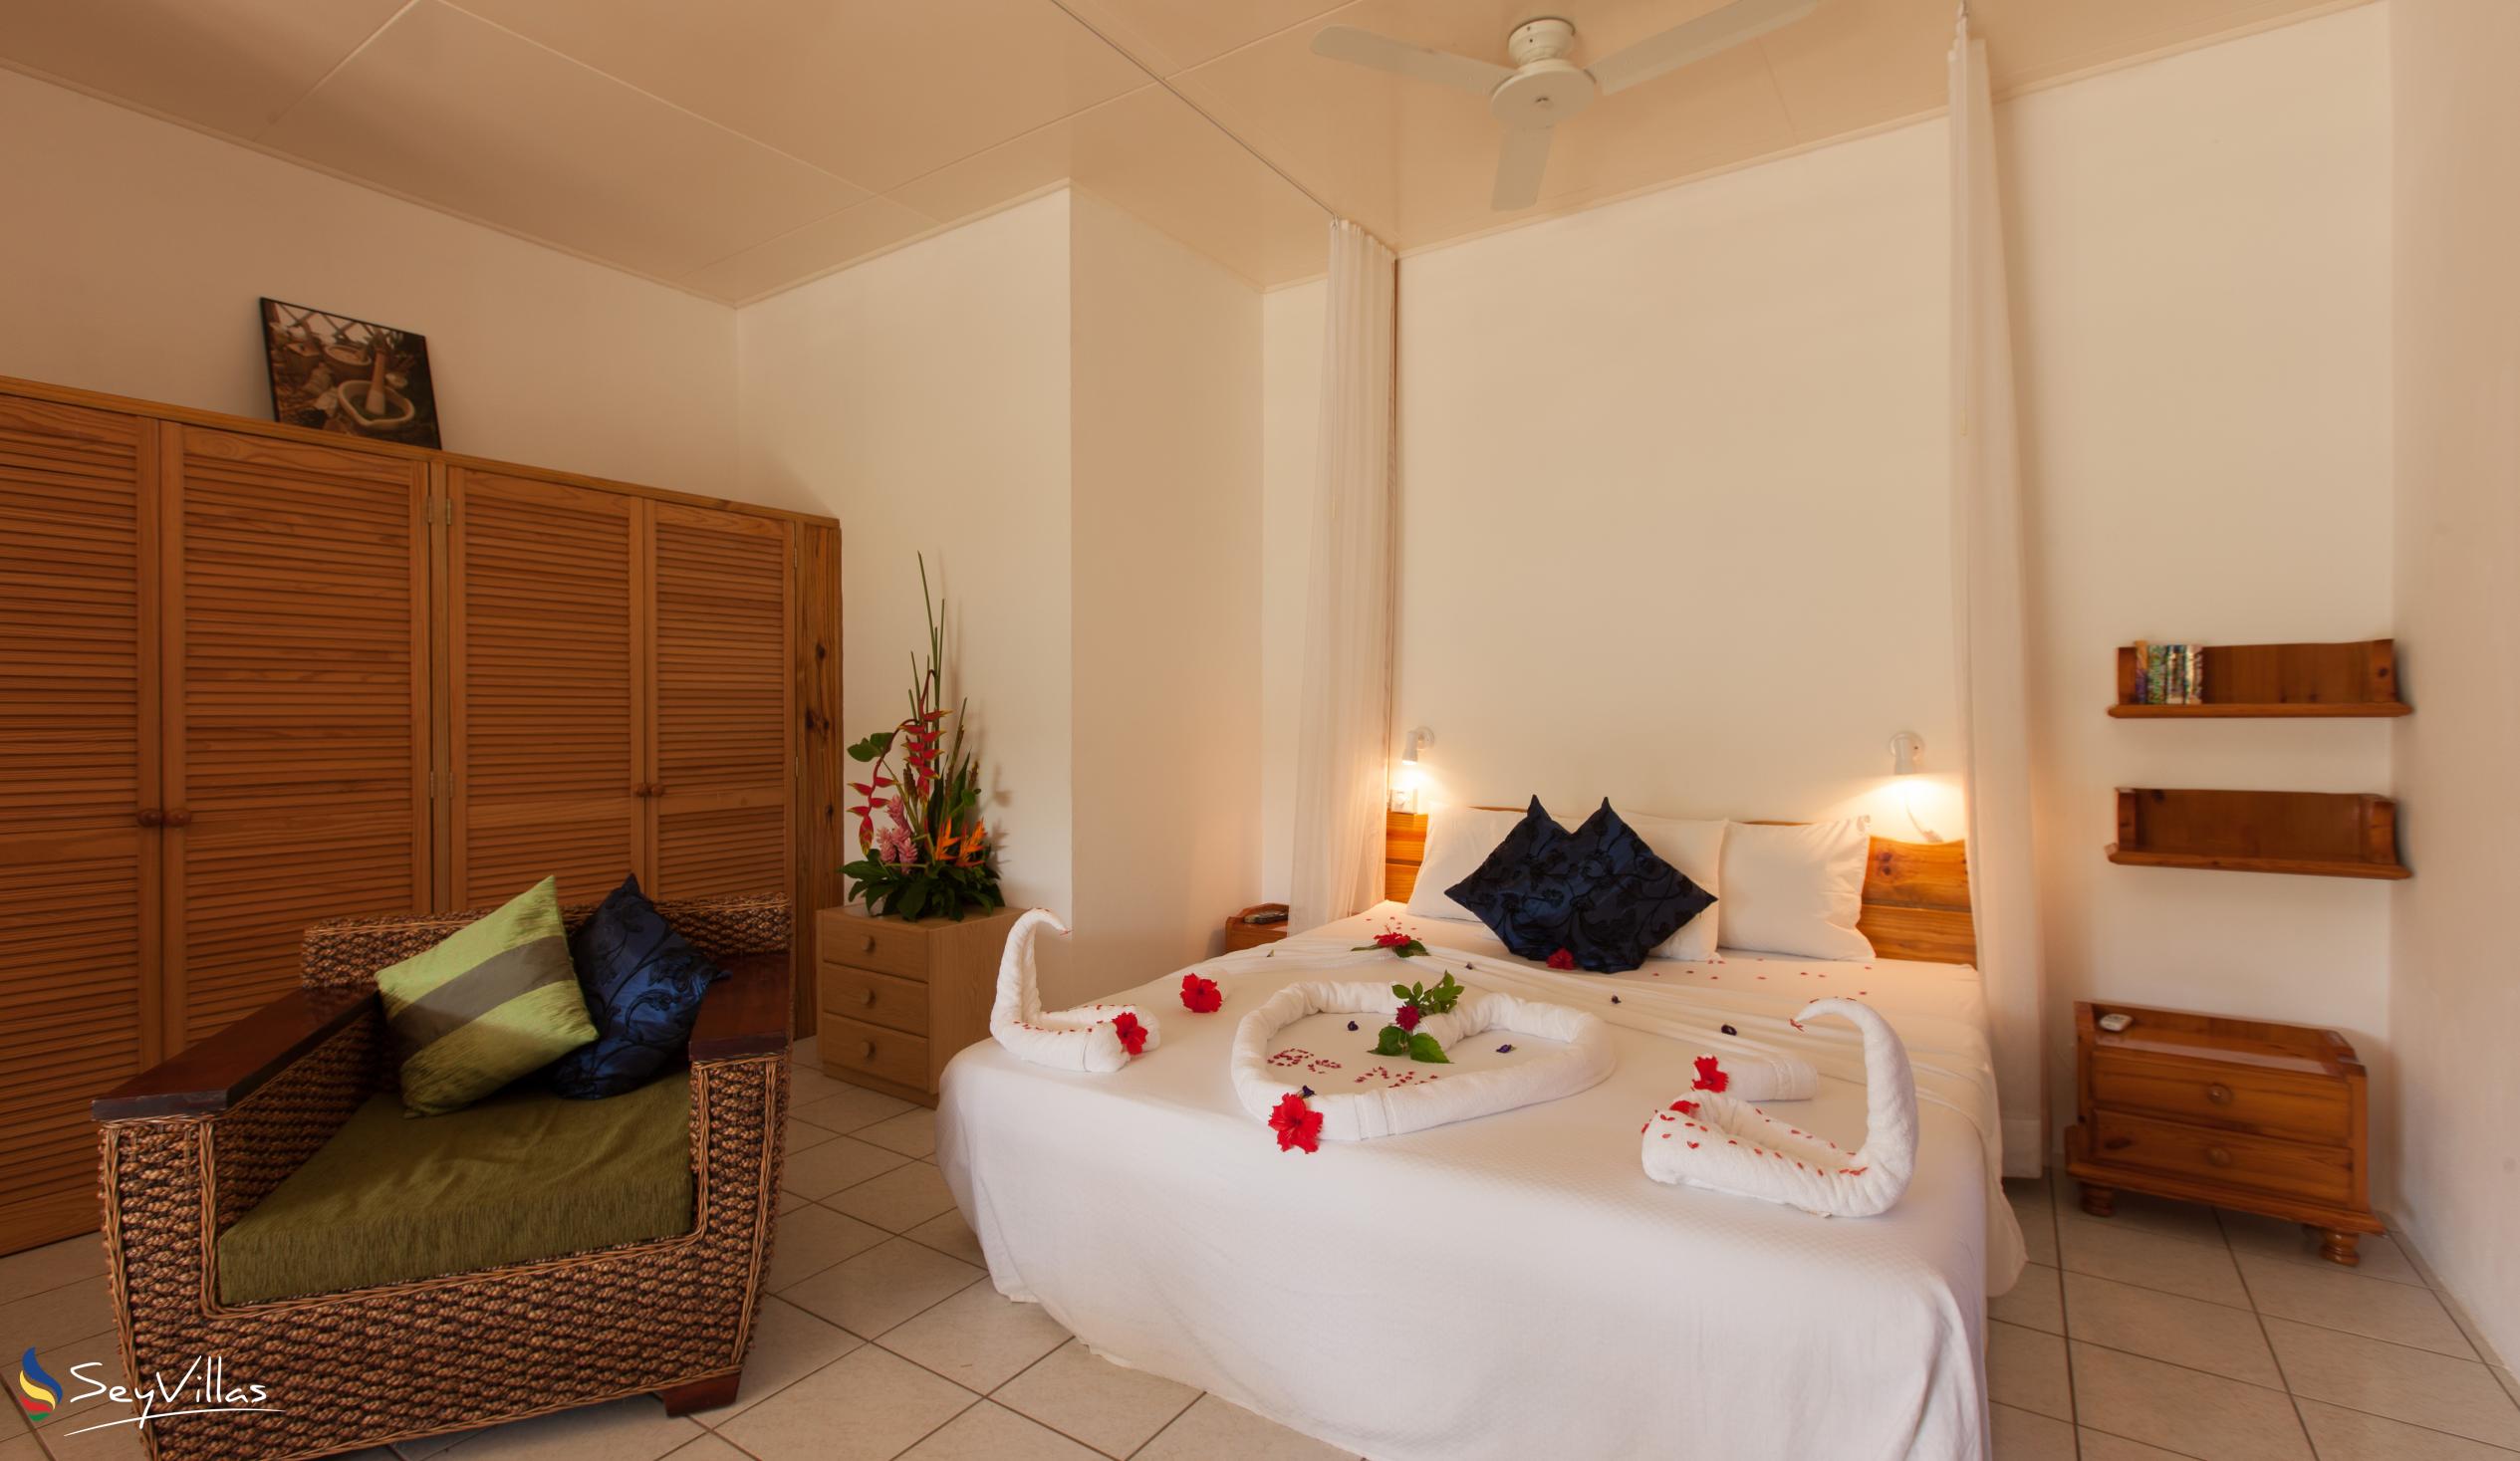 Foto 24: Le Relax St. Joseph Guest House - Chambre Supérieure - Praslin (Seychelles)